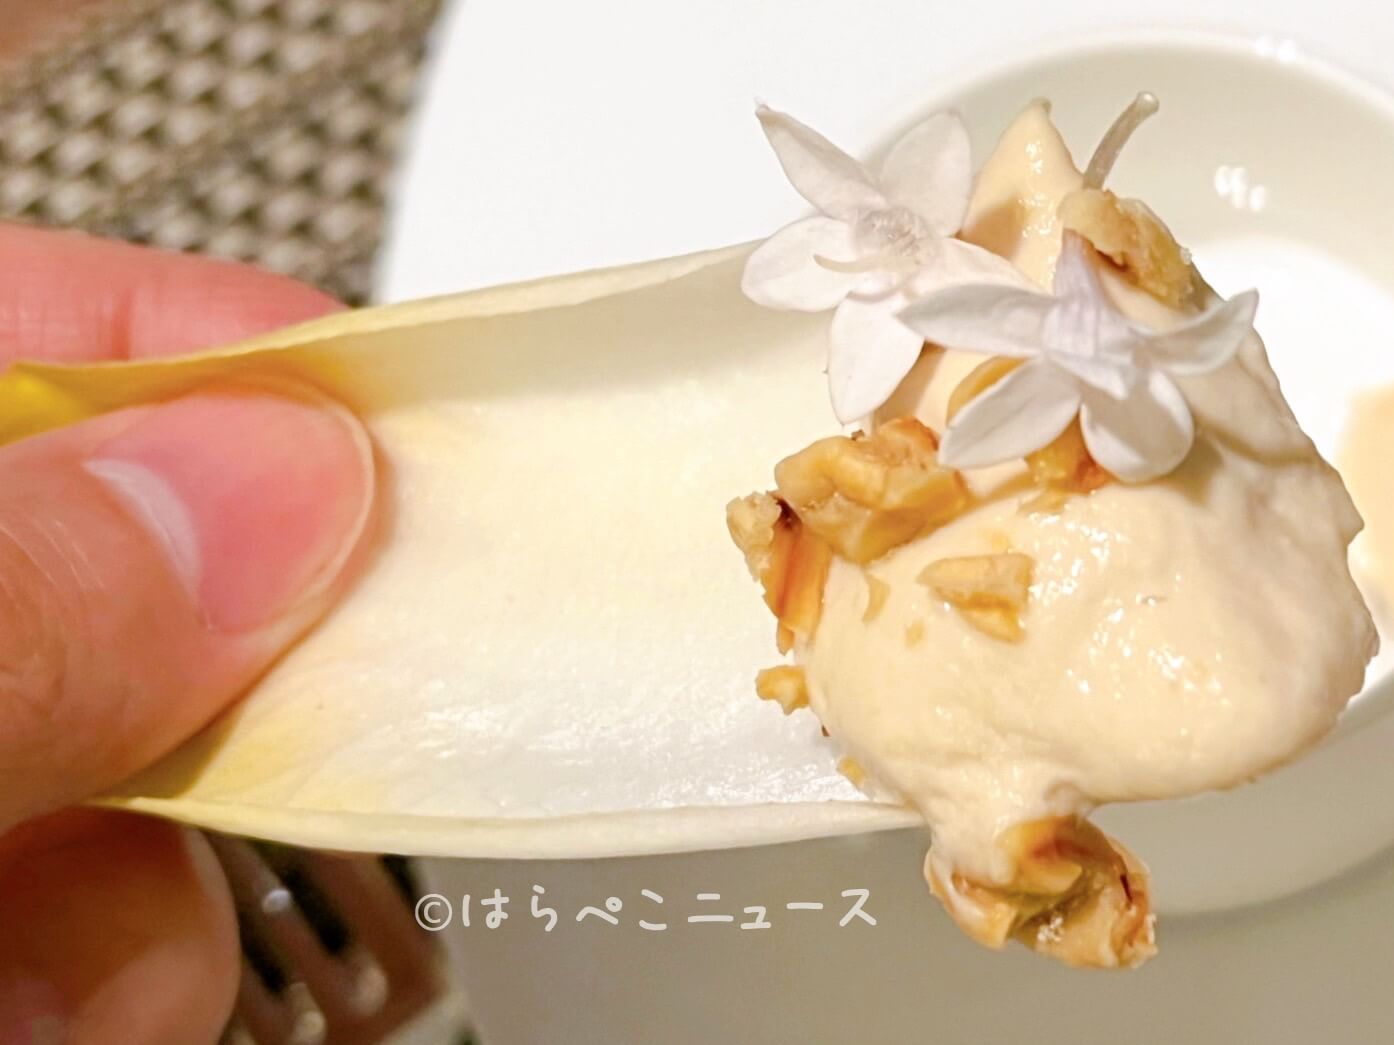 【実食レポ】ホテルグランバッハ東京銀座「ウェルネス・ディナーコース」フレンチ×発酵の冬メニュー